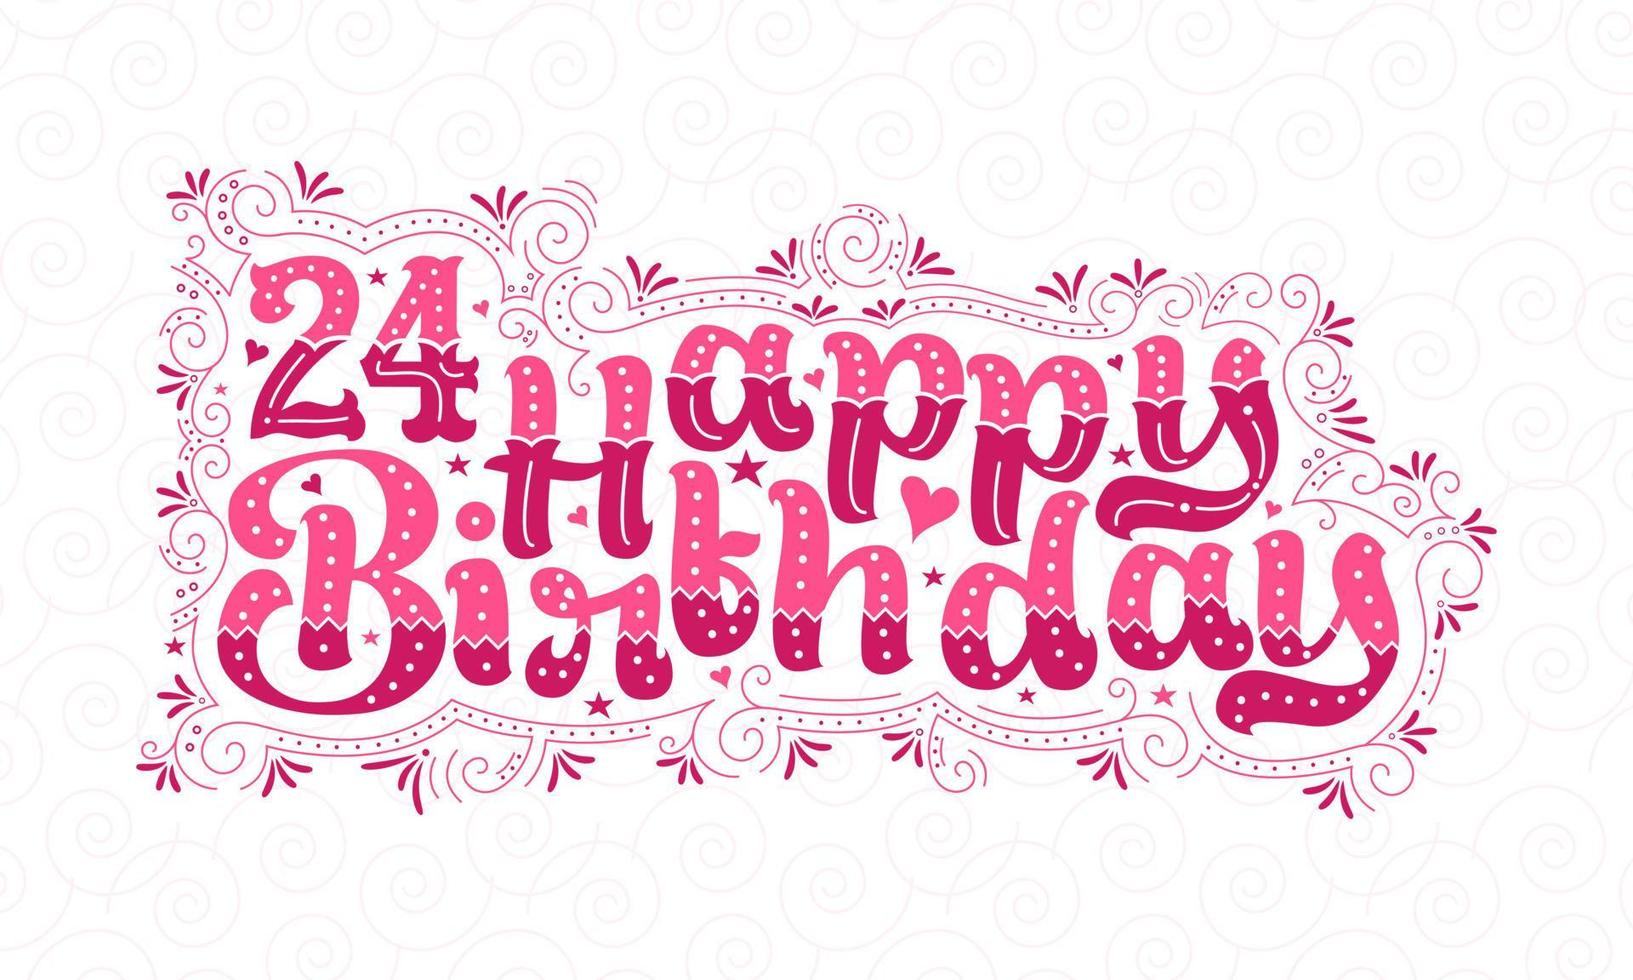 24:e grattis på födelsedagen bokstäver, 24 års födelsedag vacker typografidesign med rosa prickar, linjer och löv. vektor